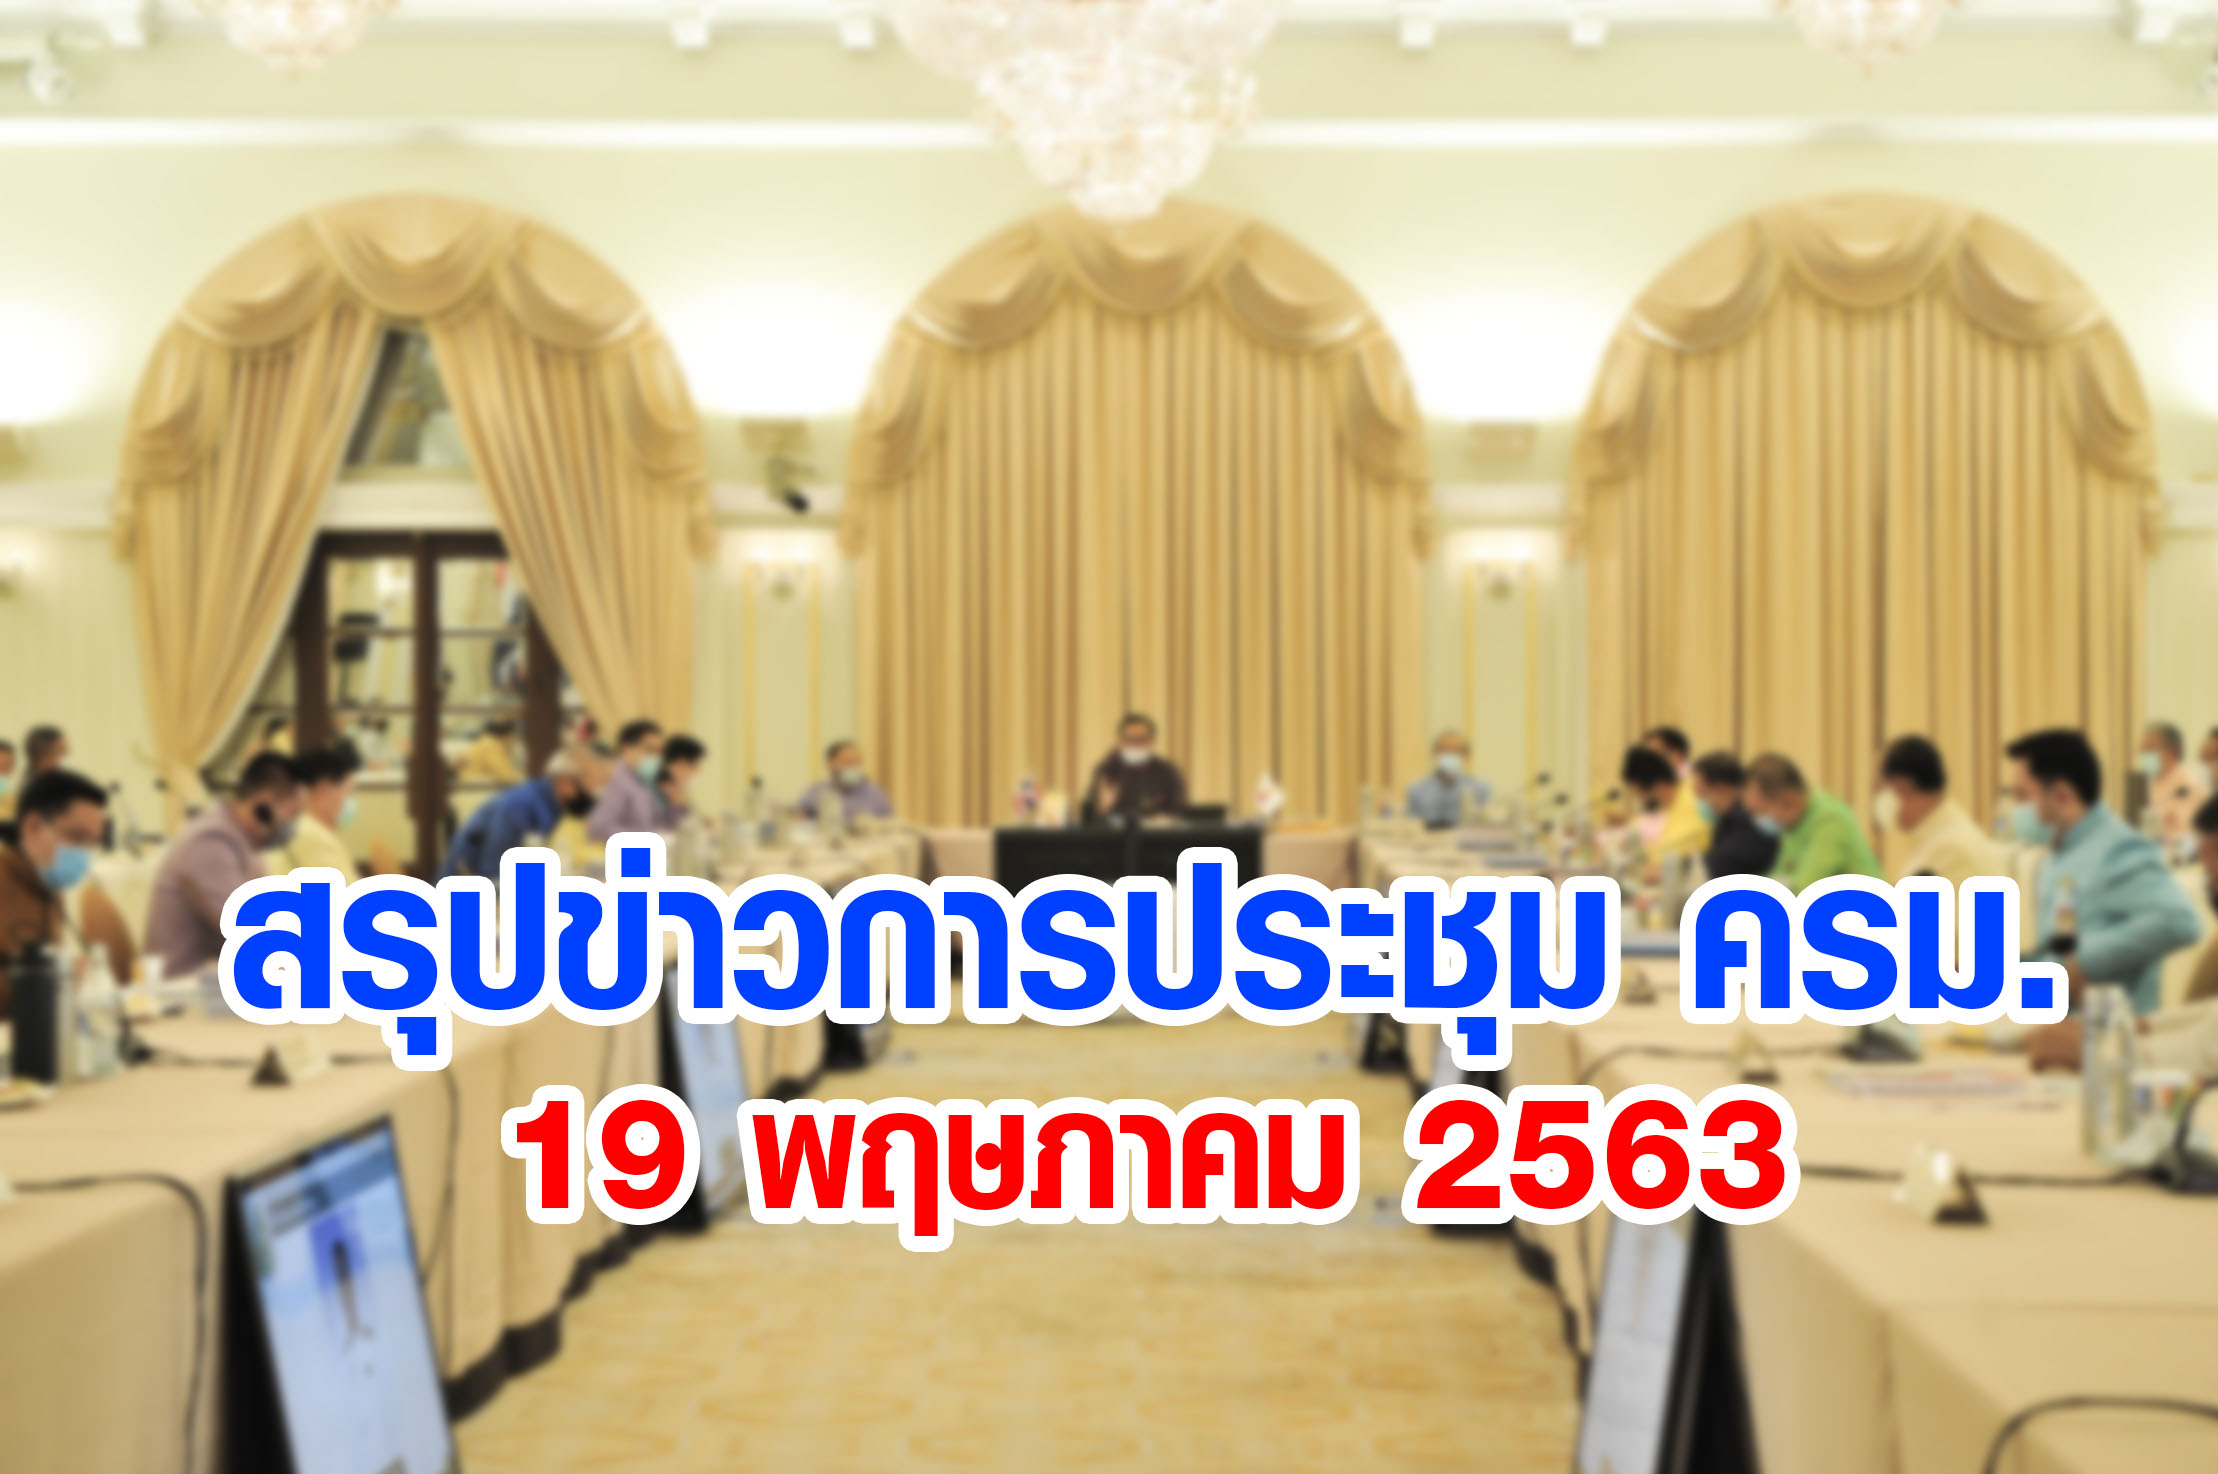 สรุปข่าวการประชุมคณะรัฐมนตรี 19 พ.ค. 2563